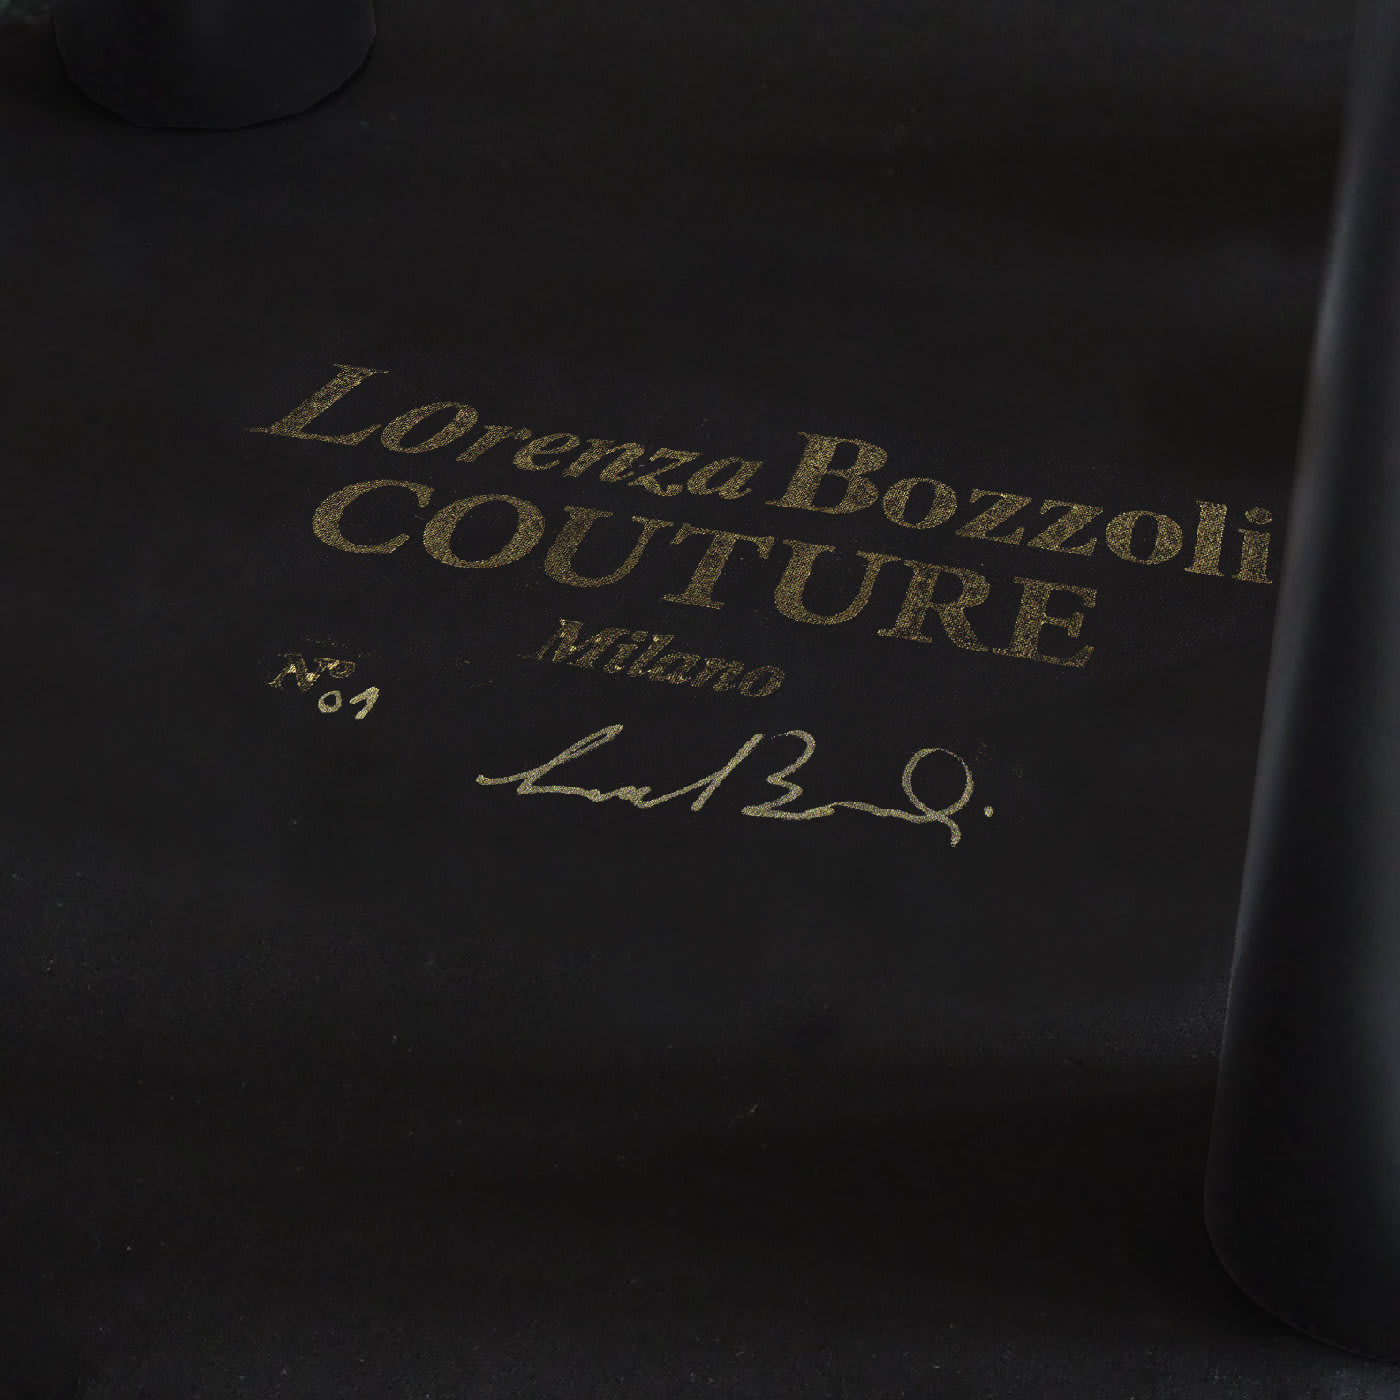 Couture Geometric Deco’ Ottoman - Lorenza Bozzoli Design